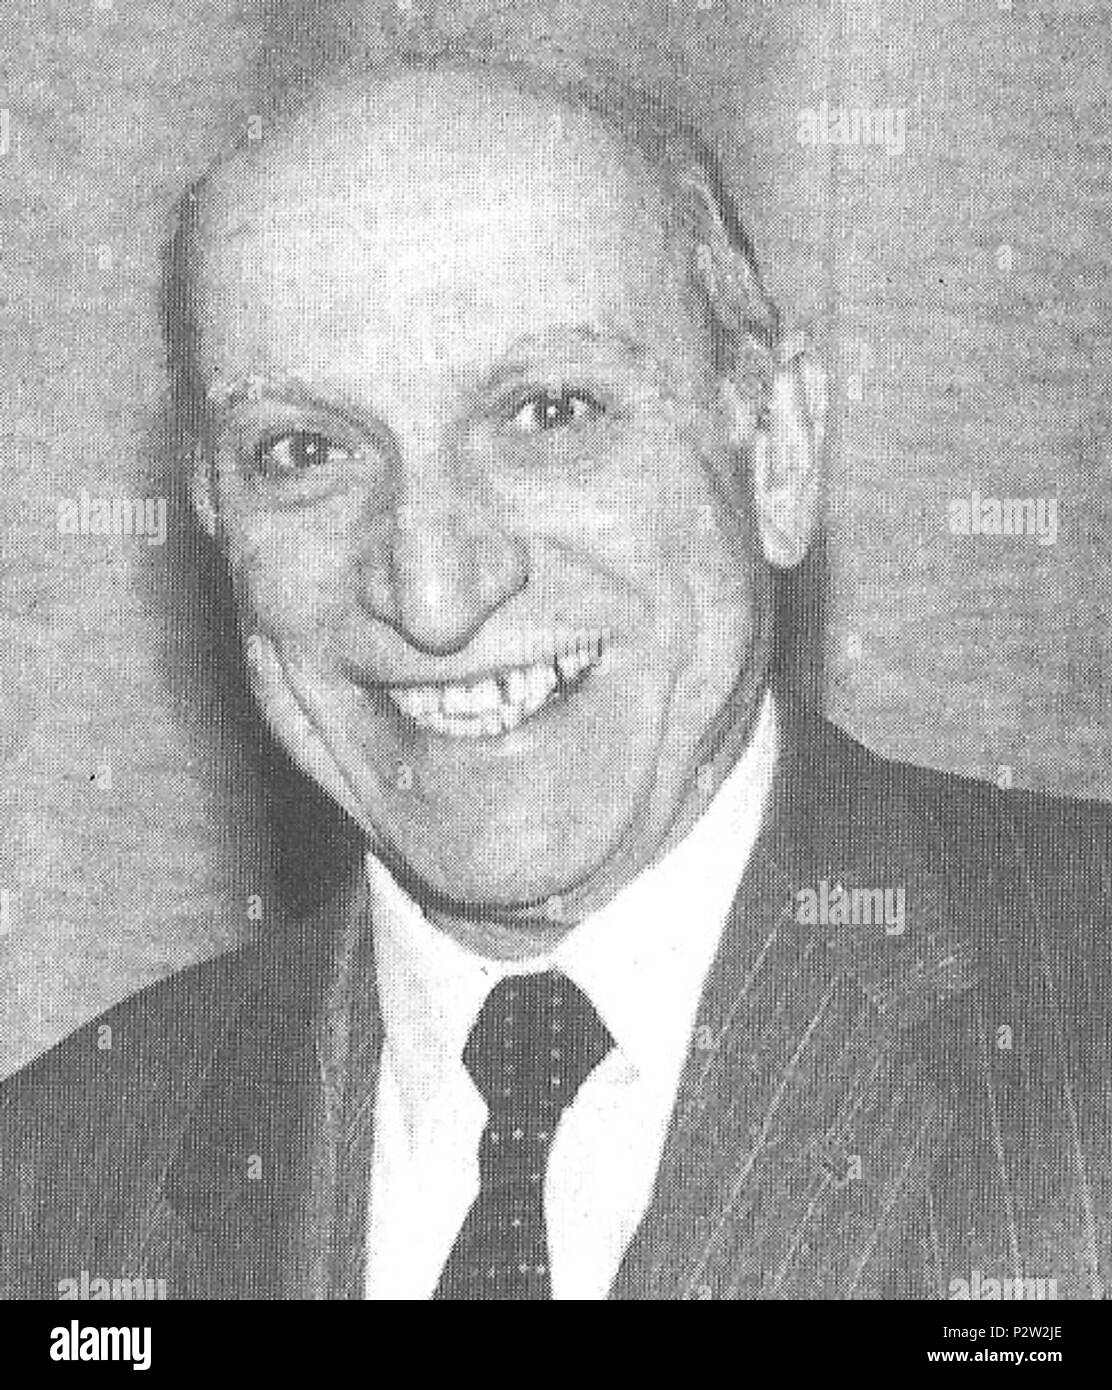 . Italiano : Giorgio Zanotto, sindaco di Verona . Intorno al 1970. n.d. 35 GiorgioZanotto Banque D'Images